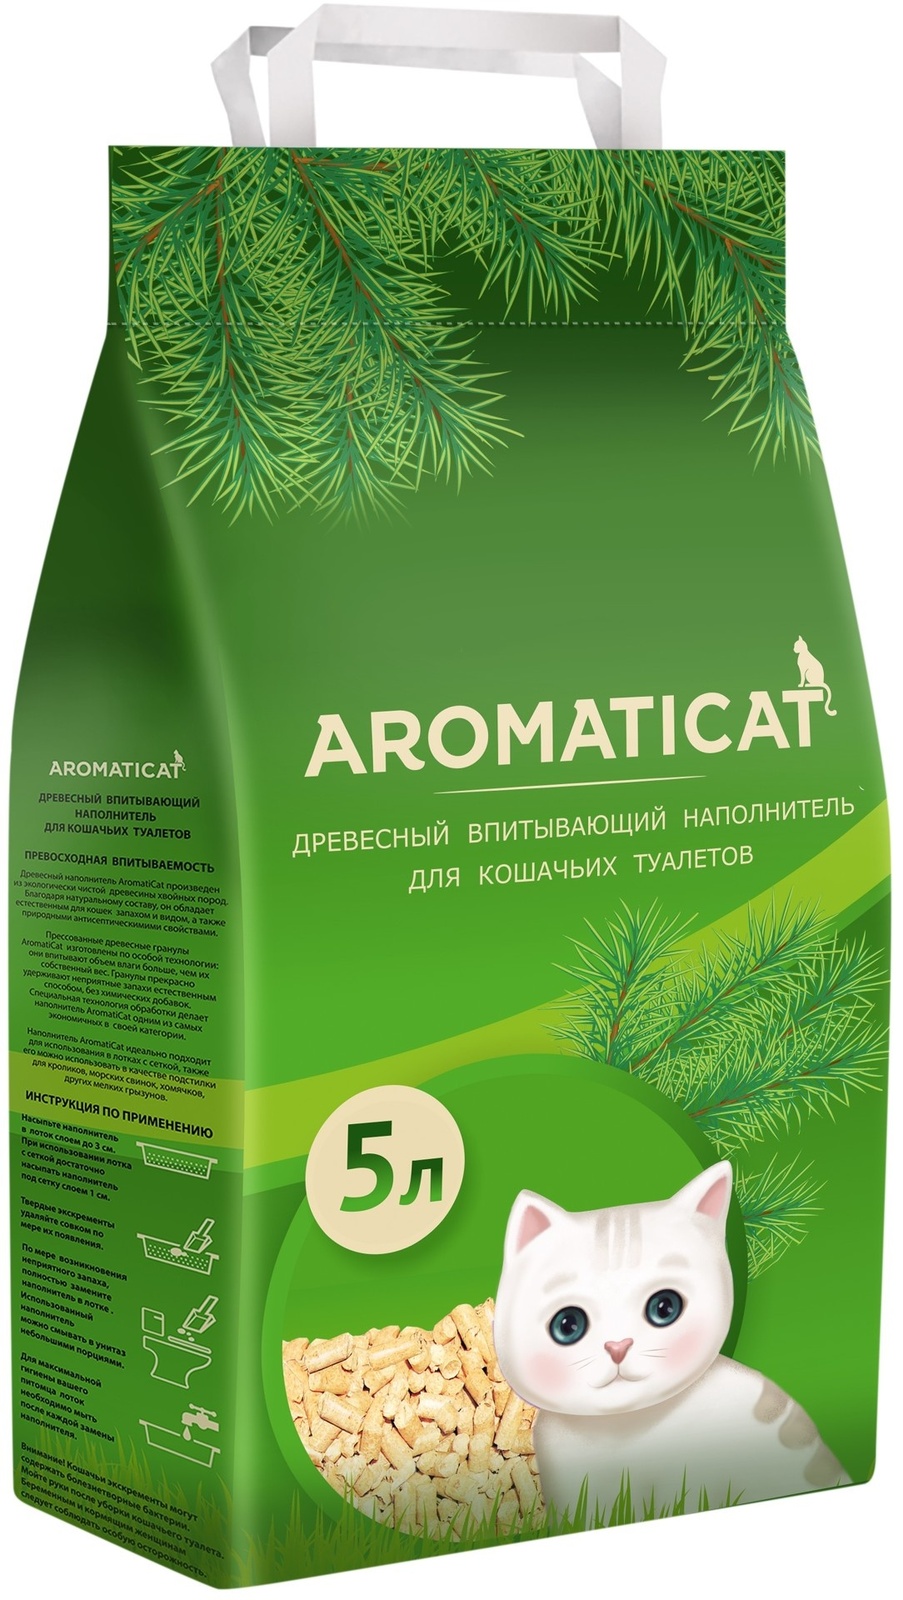 AromatiCat AromatiCat древесный впитывающий наполнитель (15 кг)